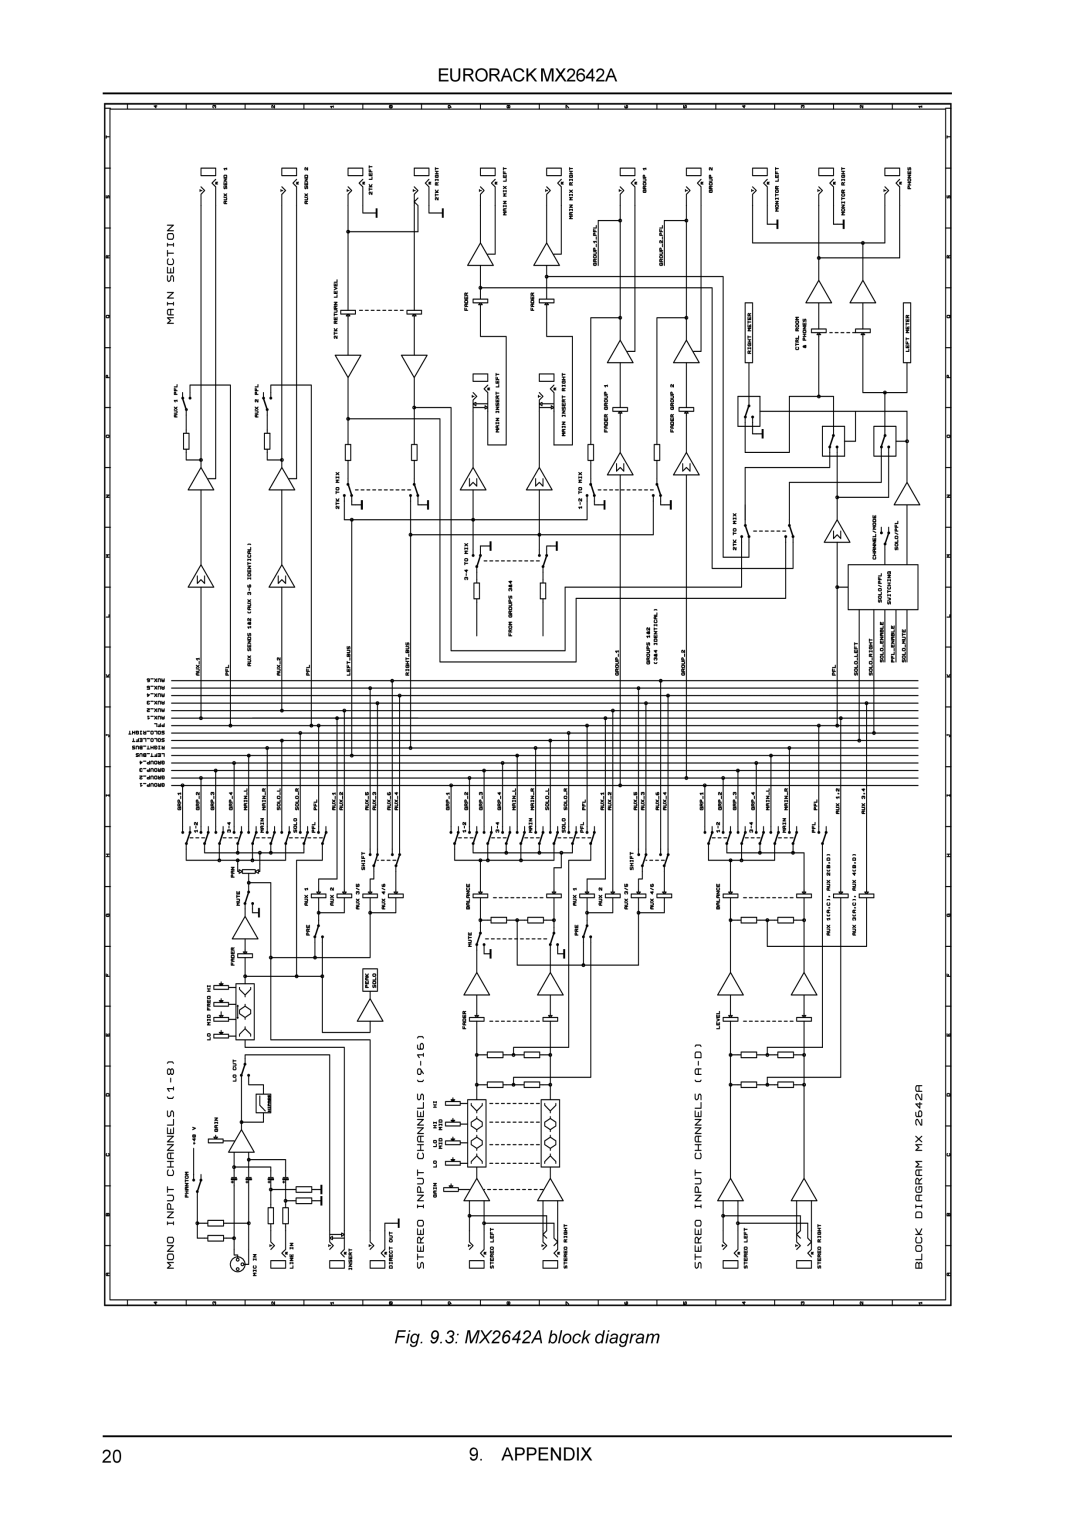 Behringer manual 3 MX2642A block diagram, EURORACK MX2642A, Appendix 